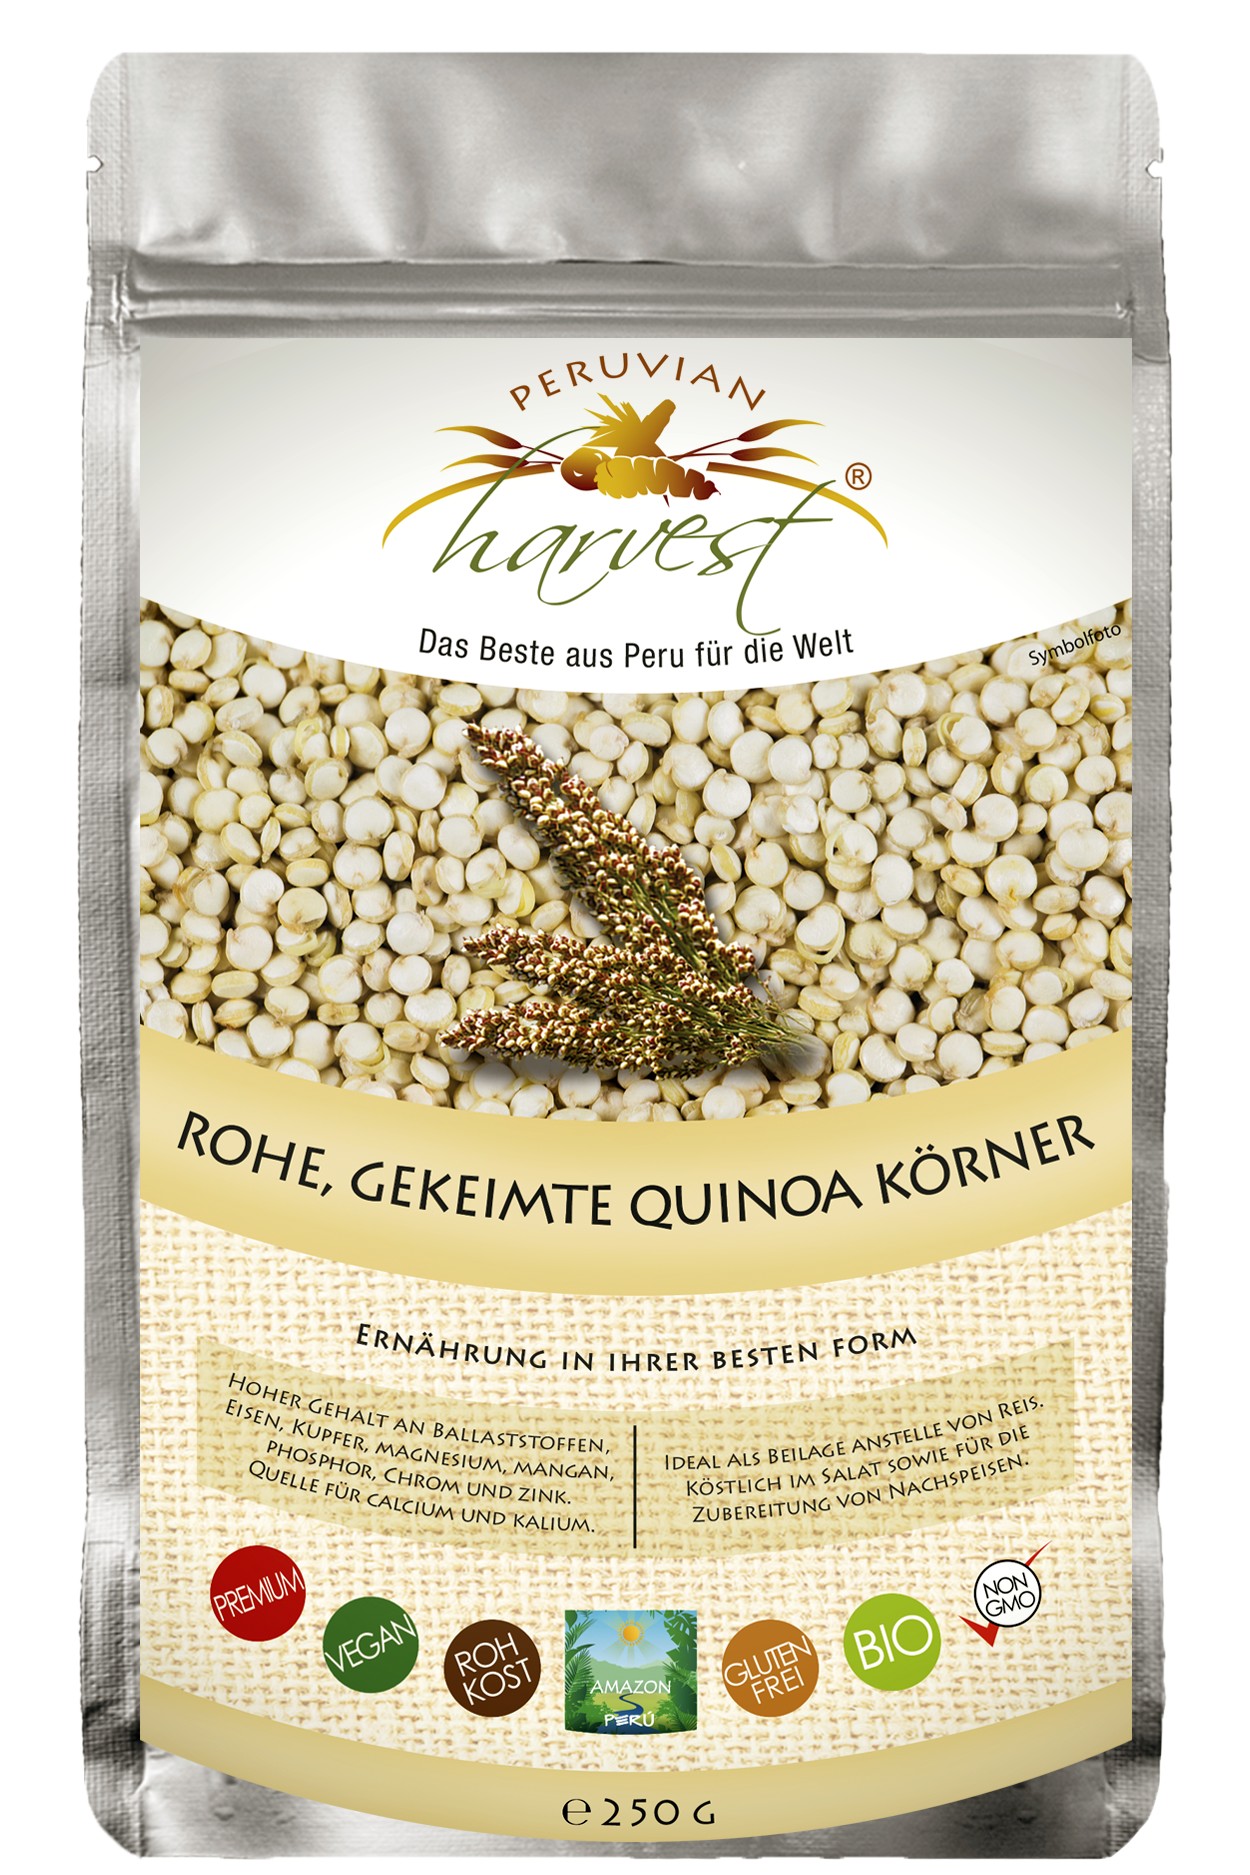 Quinoa Körner 250g roh & gekeimt, bio